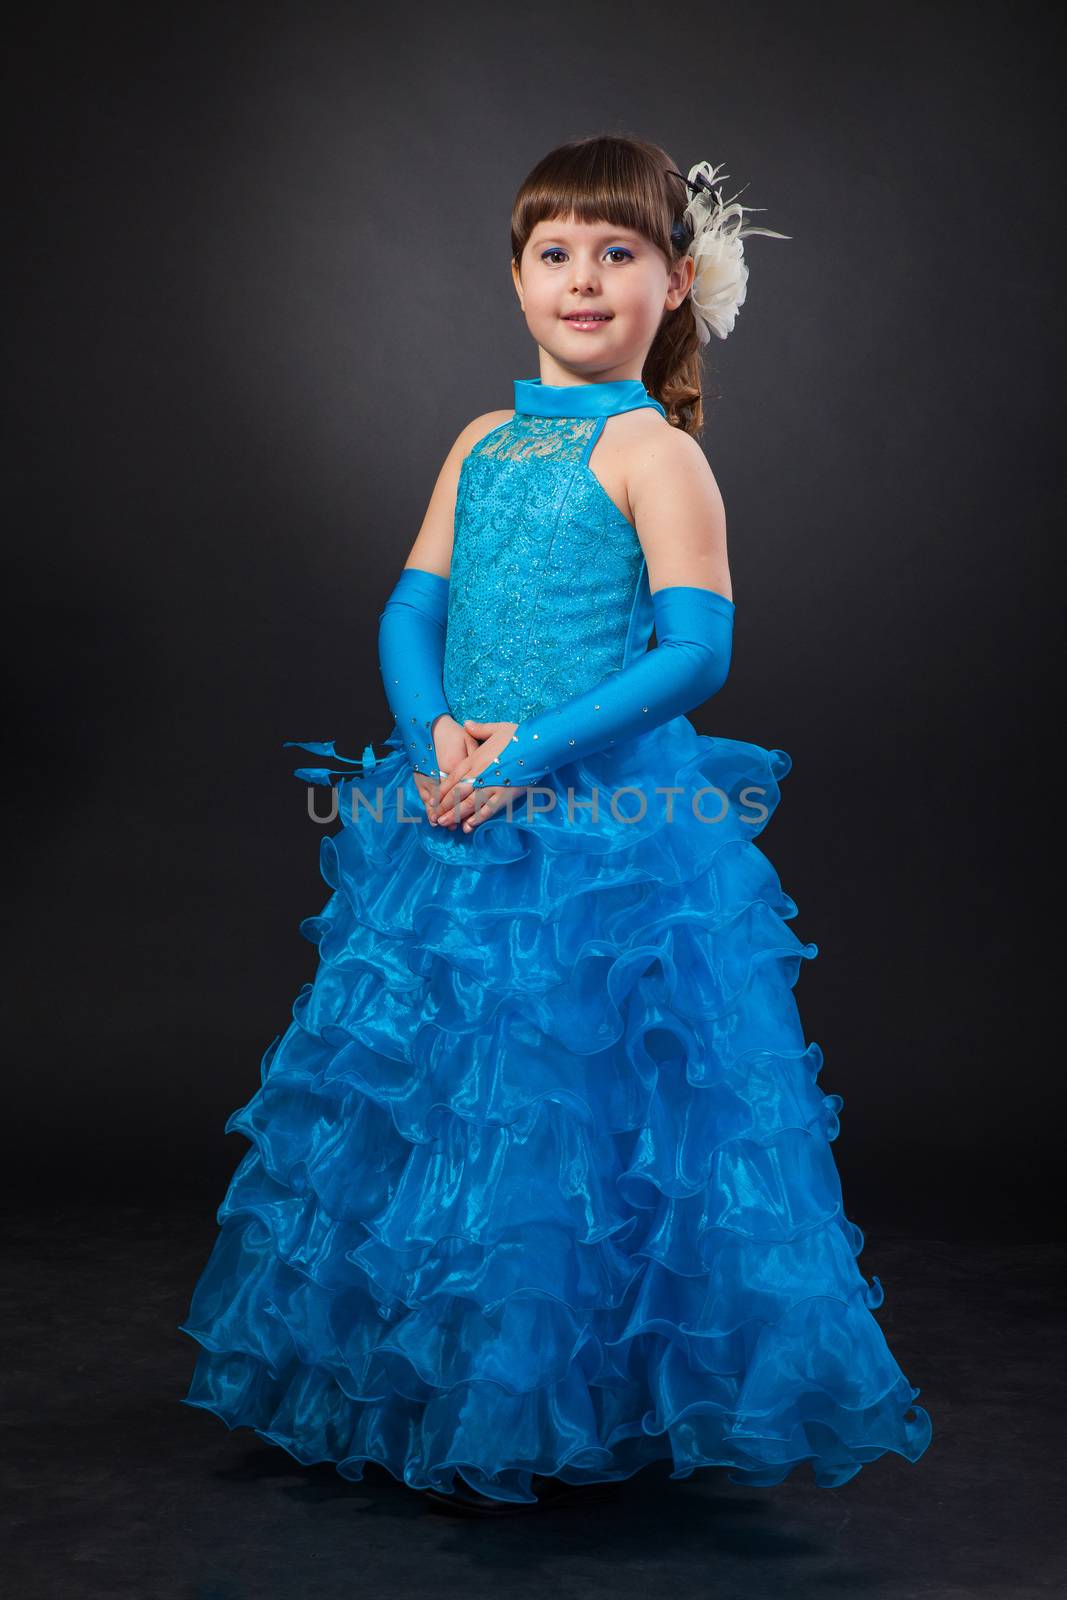 Portrait of cute smiling little girl in princess dress by bloodua